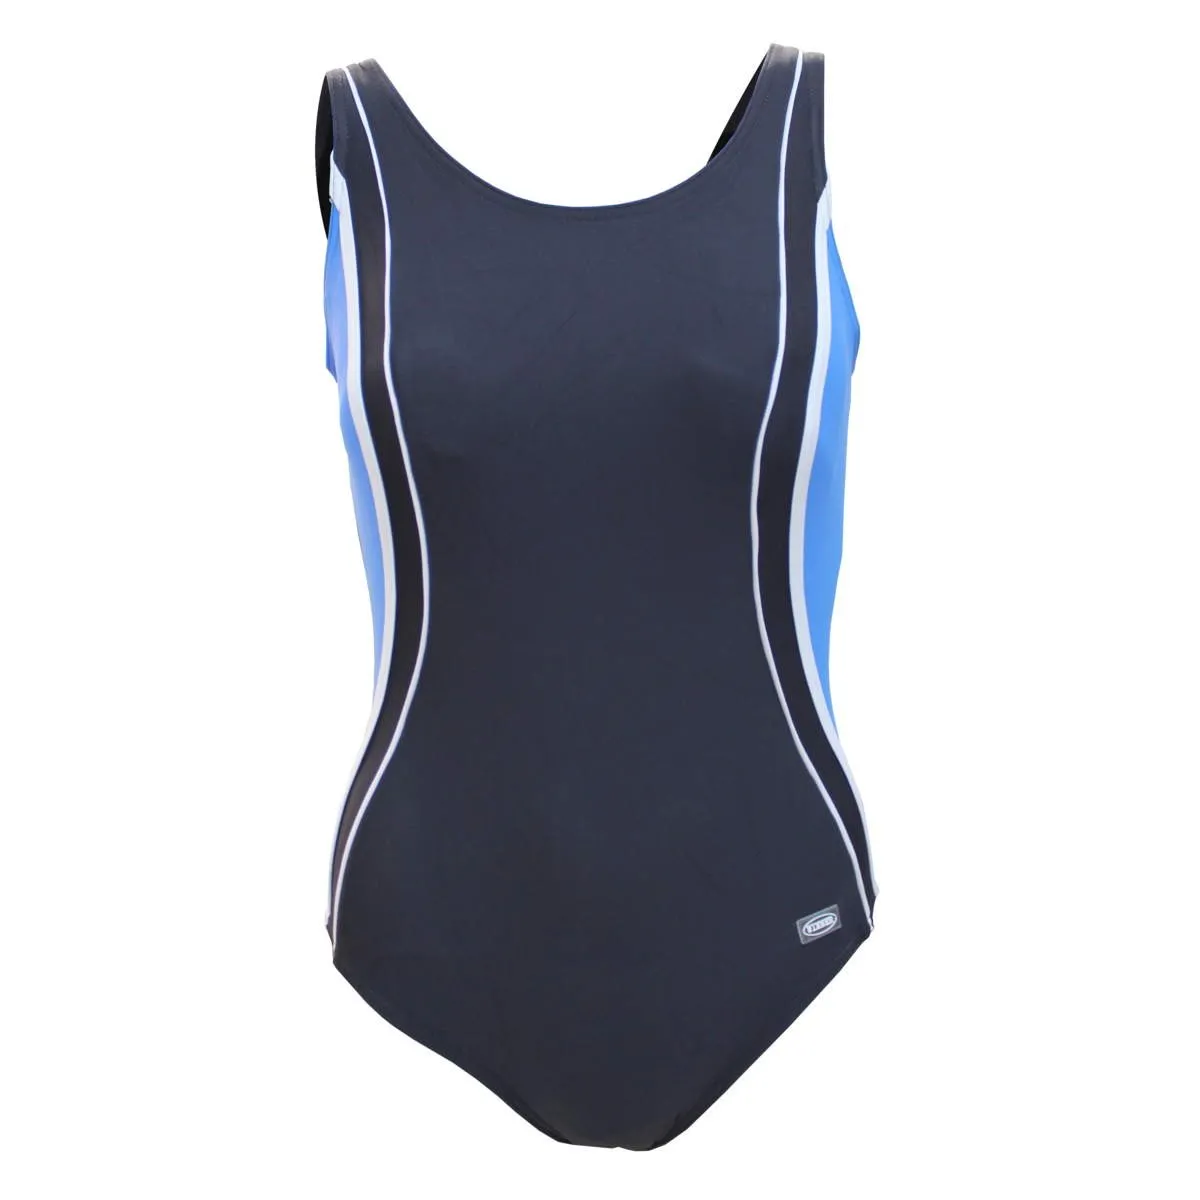 Agata swimming costume graphite/blue